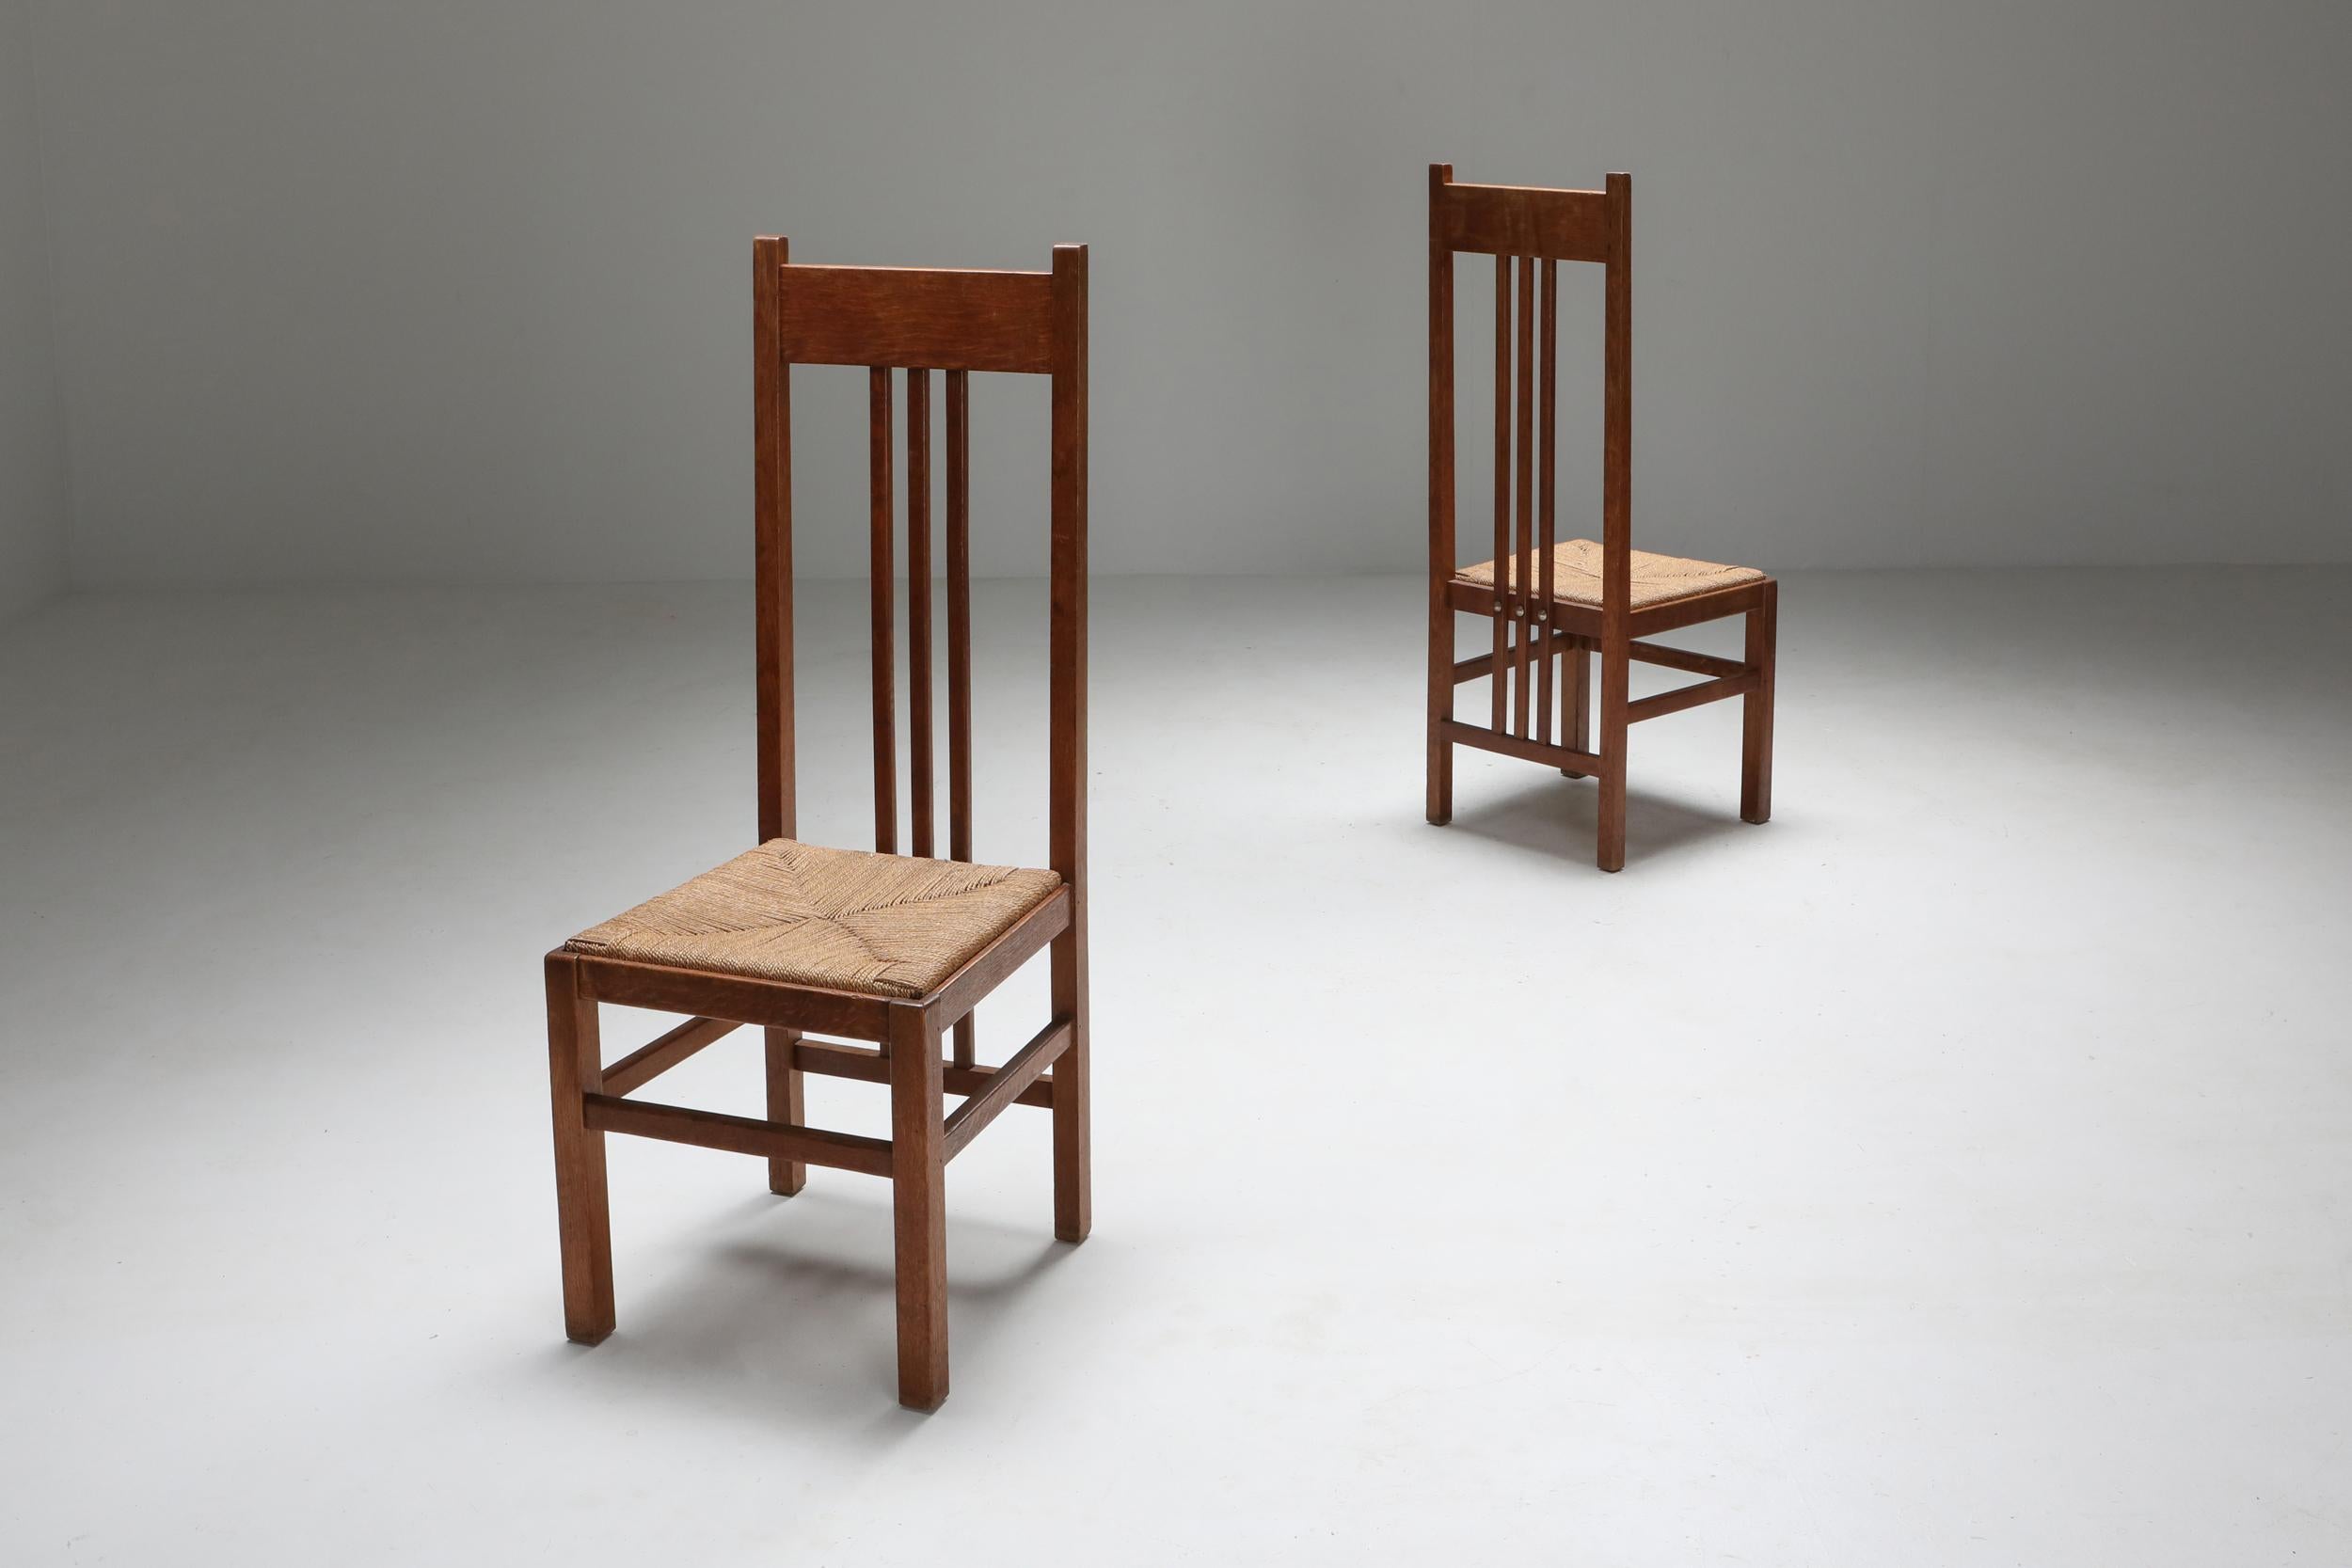 Stühle aus dem frühen 20. Jahrhundert, die der berühmten Haager Schule in den Niederlanden entstammen und auf die 1920er Jahre zurückgehen. Mit ihrer reinen und schlichten Schönheit verkörpern diese Stühle die Essenz des modernen antiken Designs und